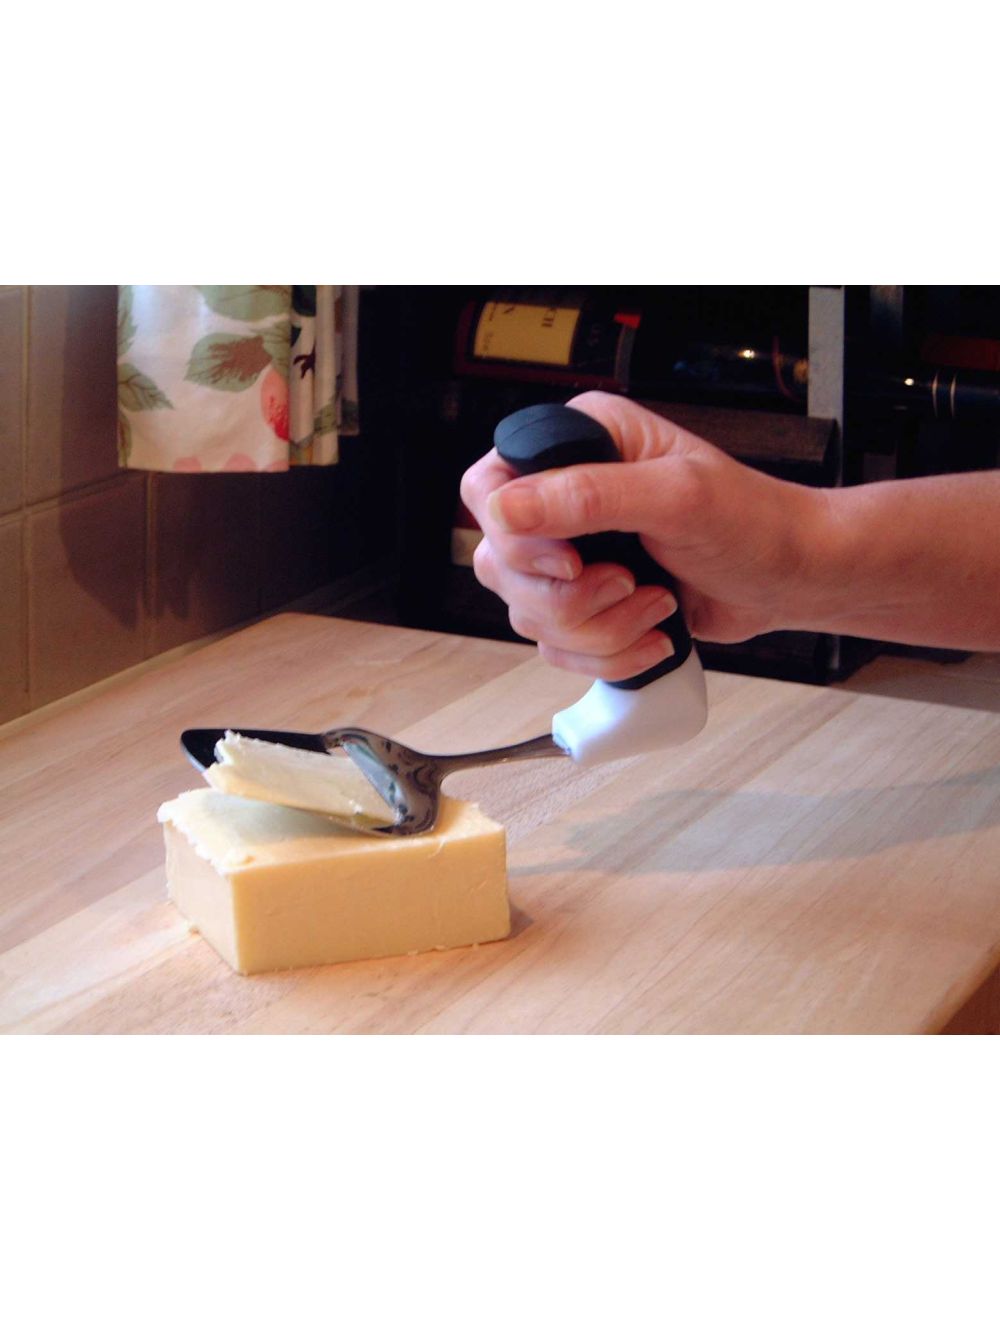 râpe à fromage, manche en l tacm - râpe ergonomique tacm